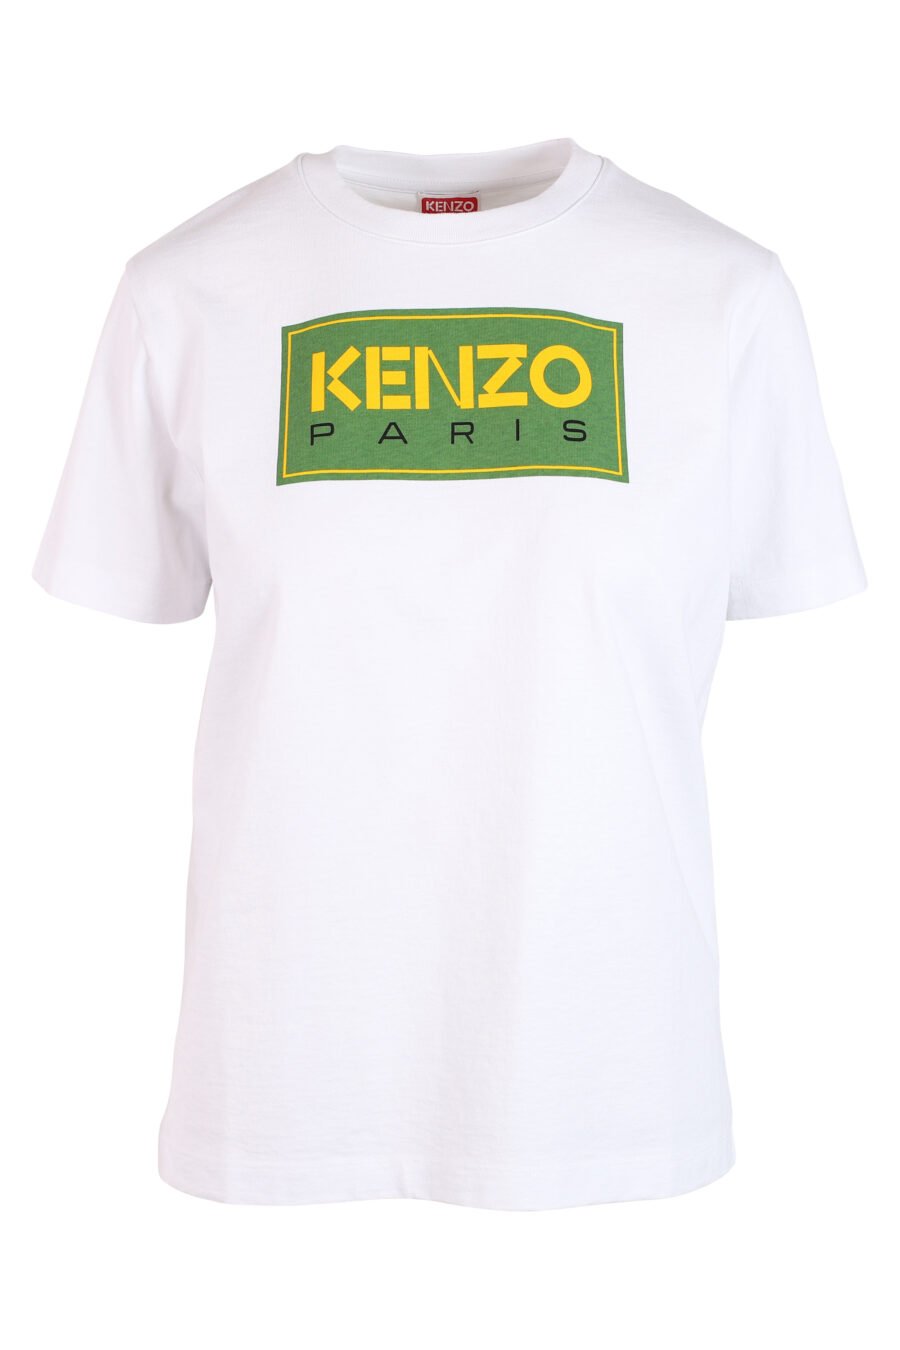 Camiseta blanca con maxilogo verde" paris" - IMG 3268